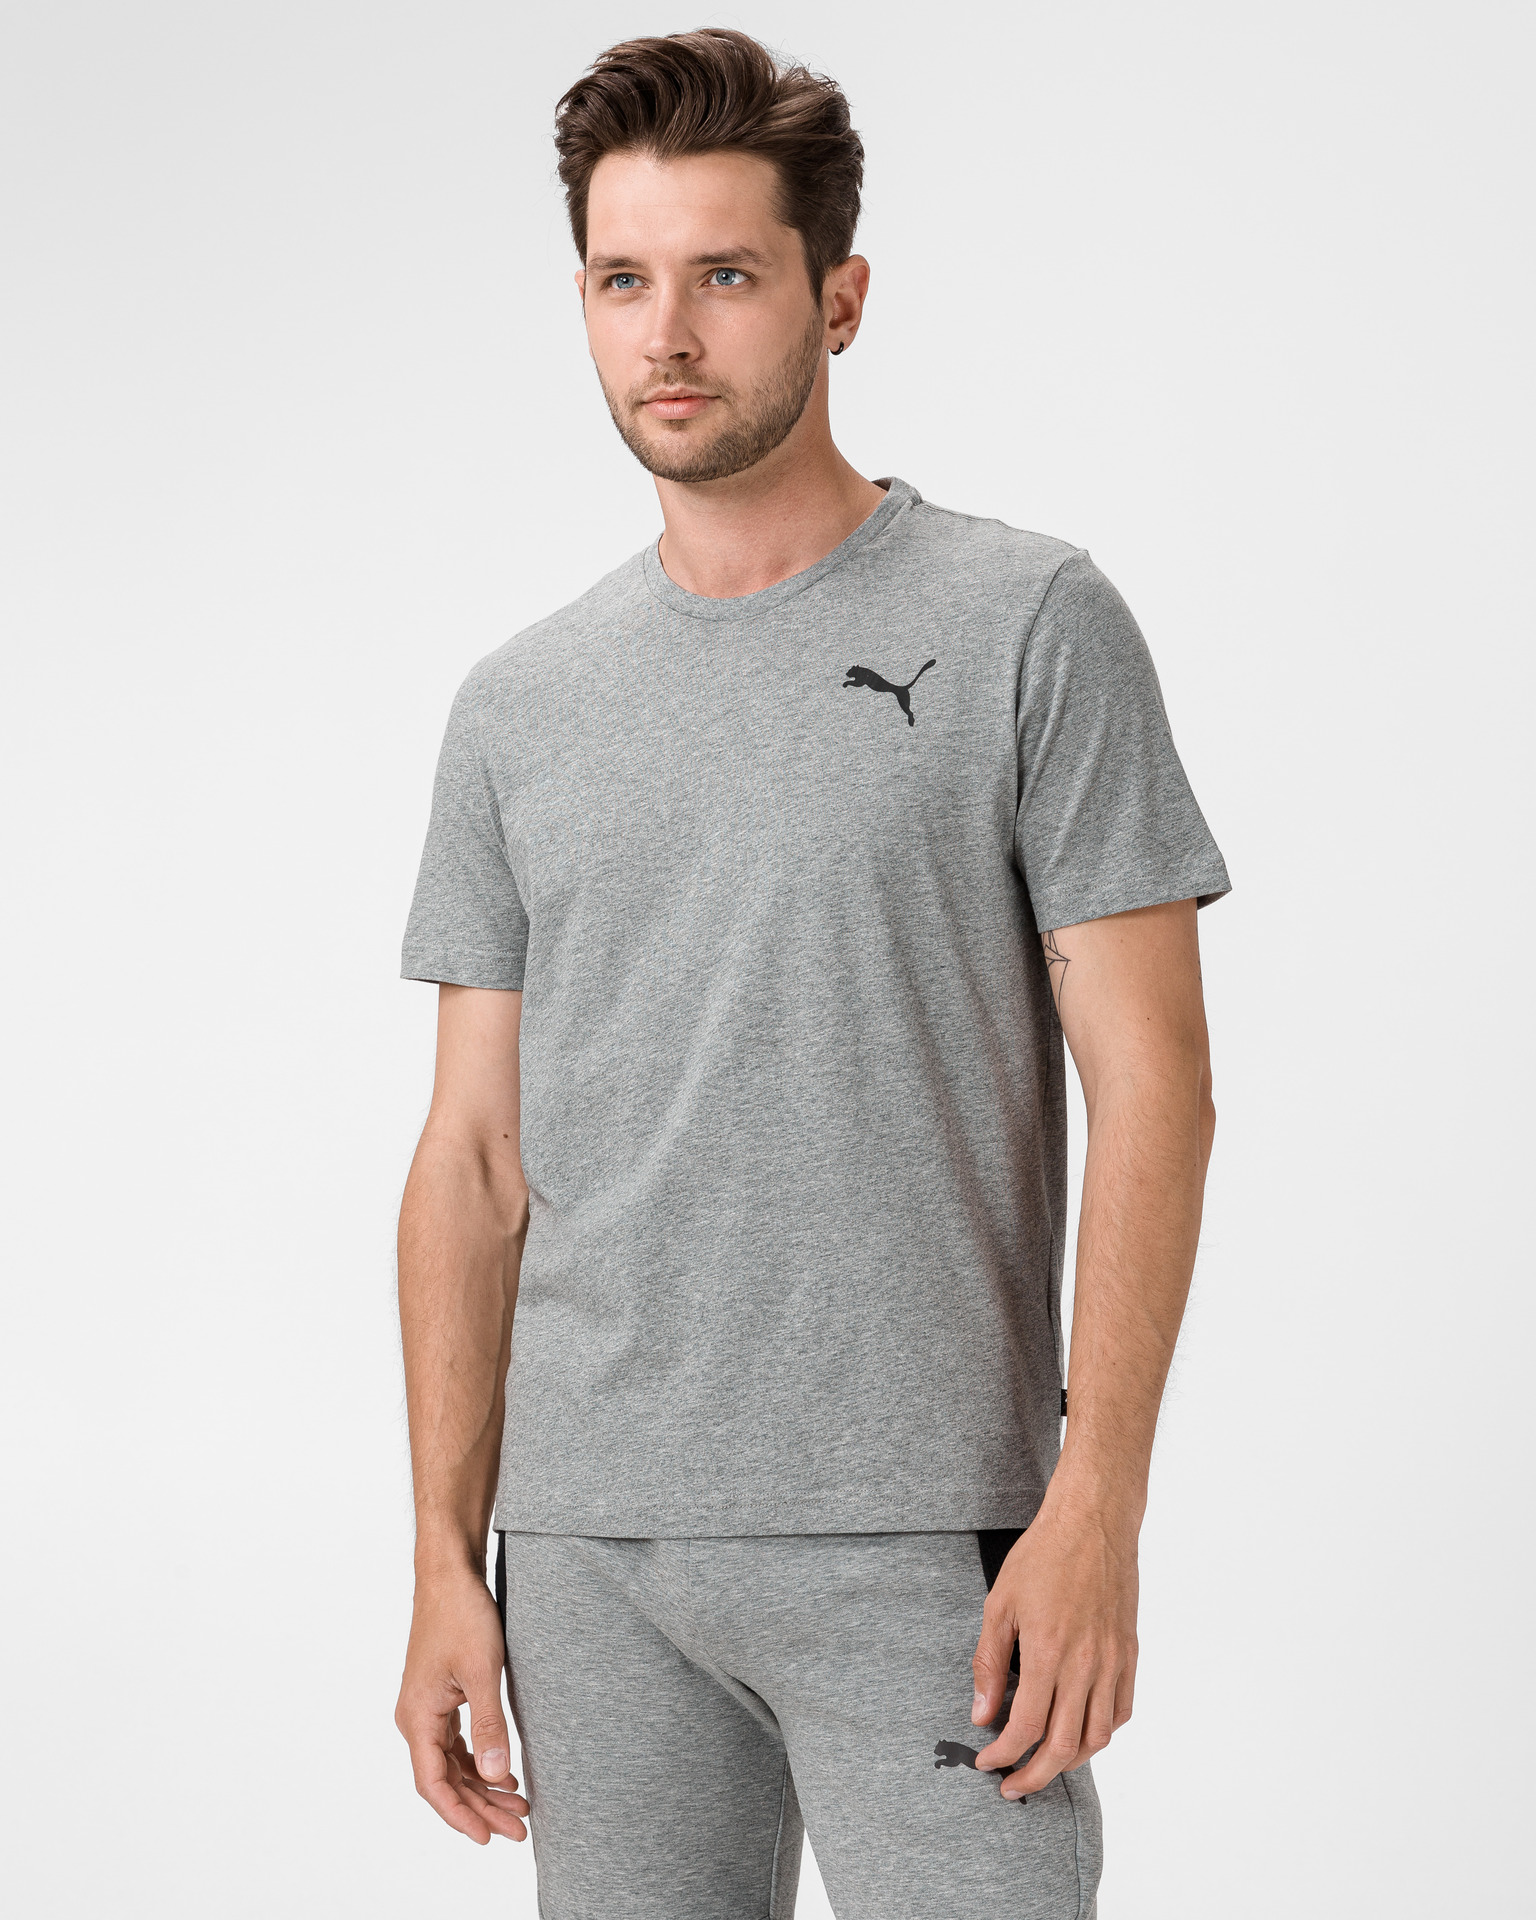 Puma T-shirt - Essential